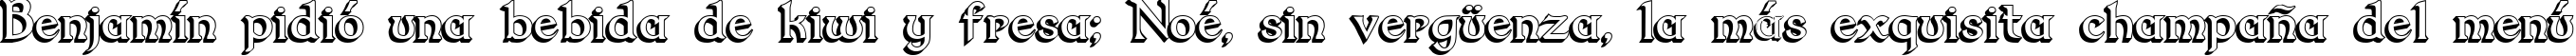 Пример написания шрифтом Dumbledor 2 3D текста на испанском